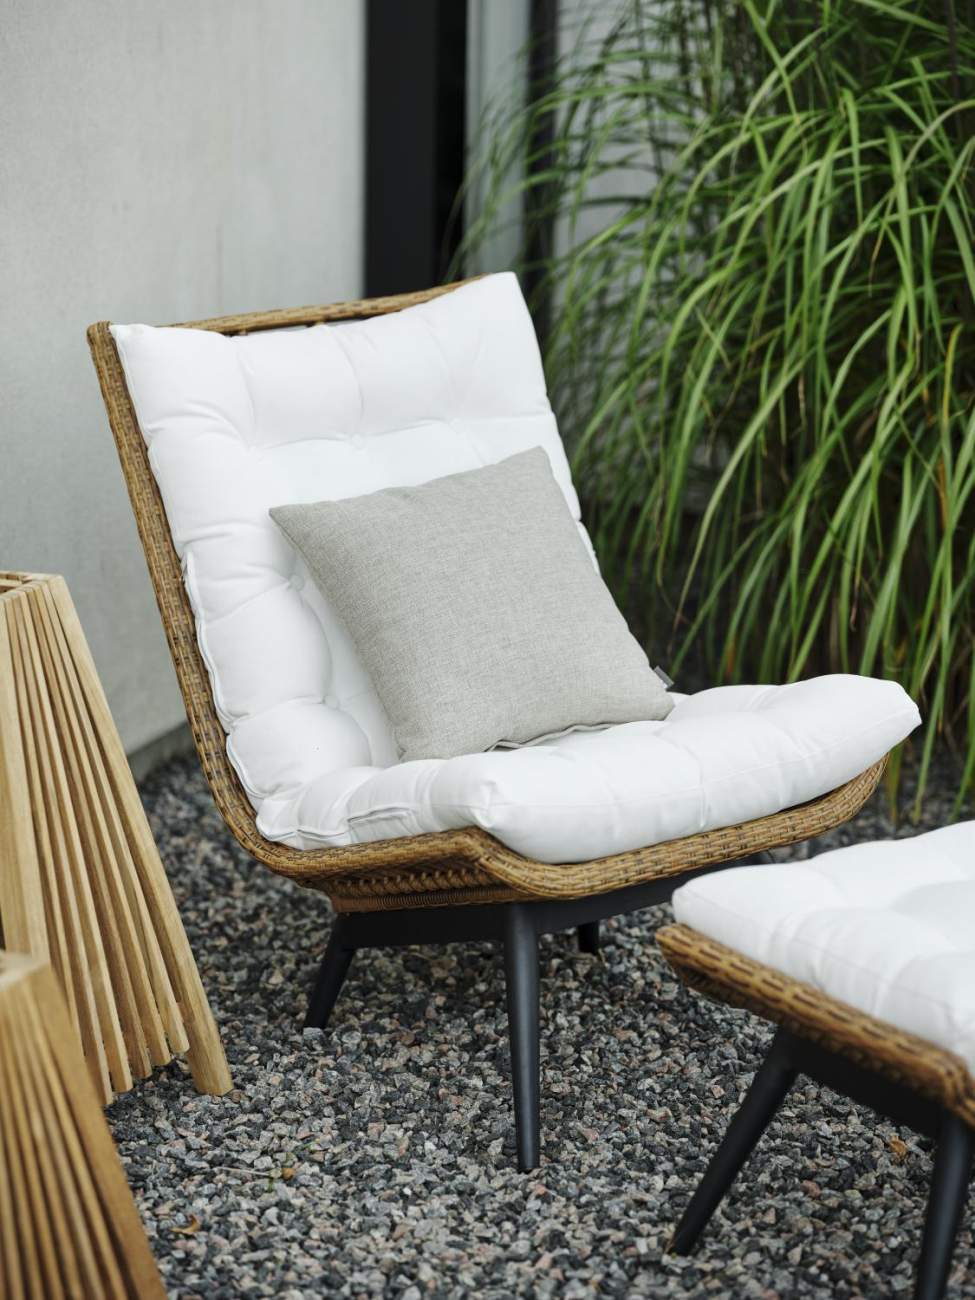 Der Gartensessel Covelo überzeugt mit seinem modernen Design. Gefertigt wurde er aus Rattan, welches einen braunen Farbton besitzt. Das Gestell ist aus Metall und hat eine schwarze Farbe. Die Sitzhöhe des Sessels beträgt 48 cm.